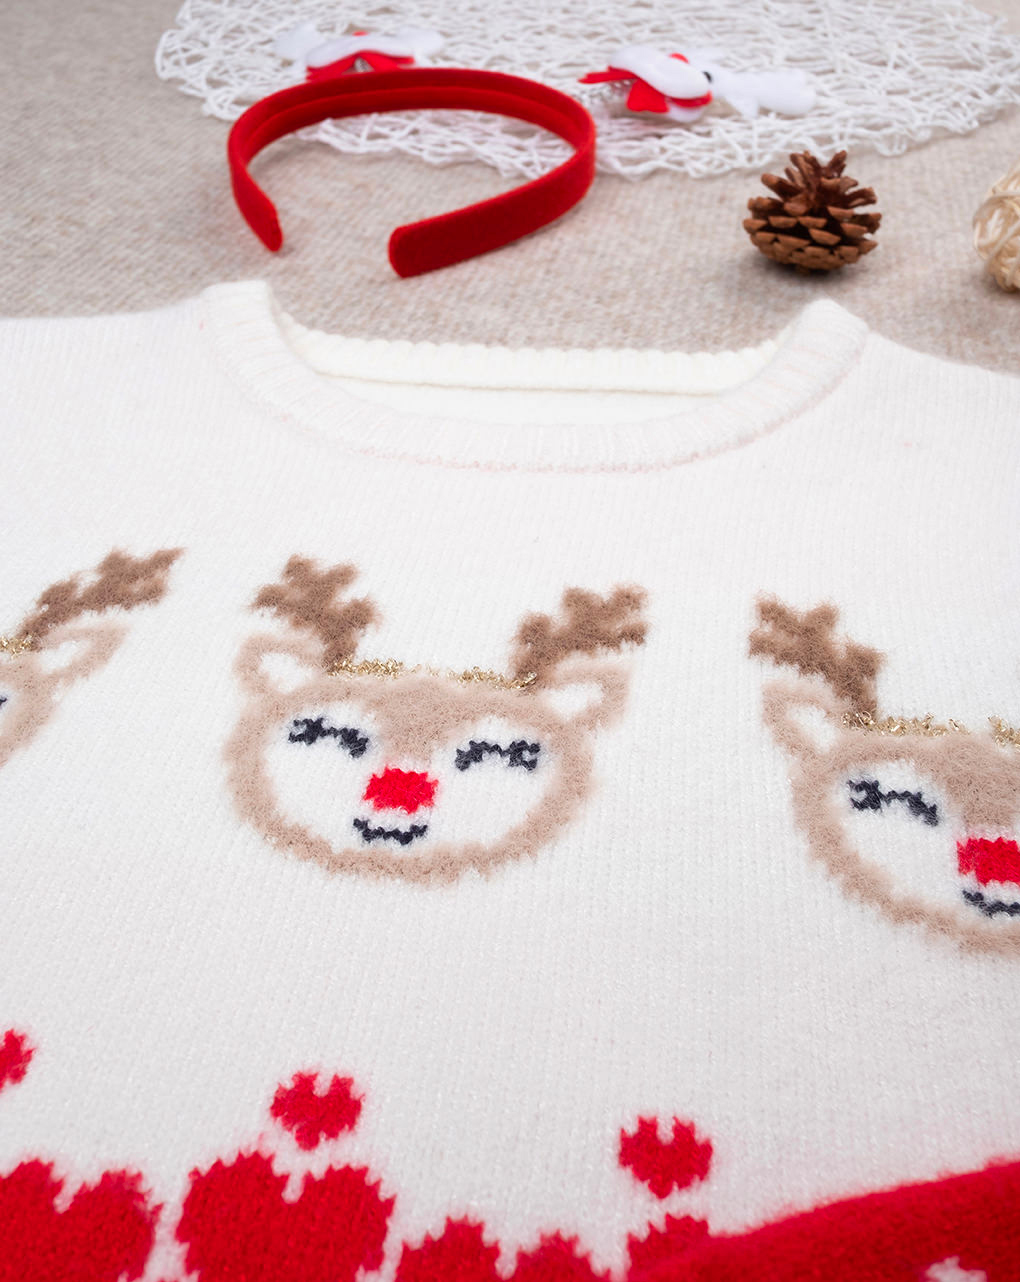 χριστουγεννιάτικο παιδικό πουλόβερ με ταράνδους για κορίτσι - Prénatal